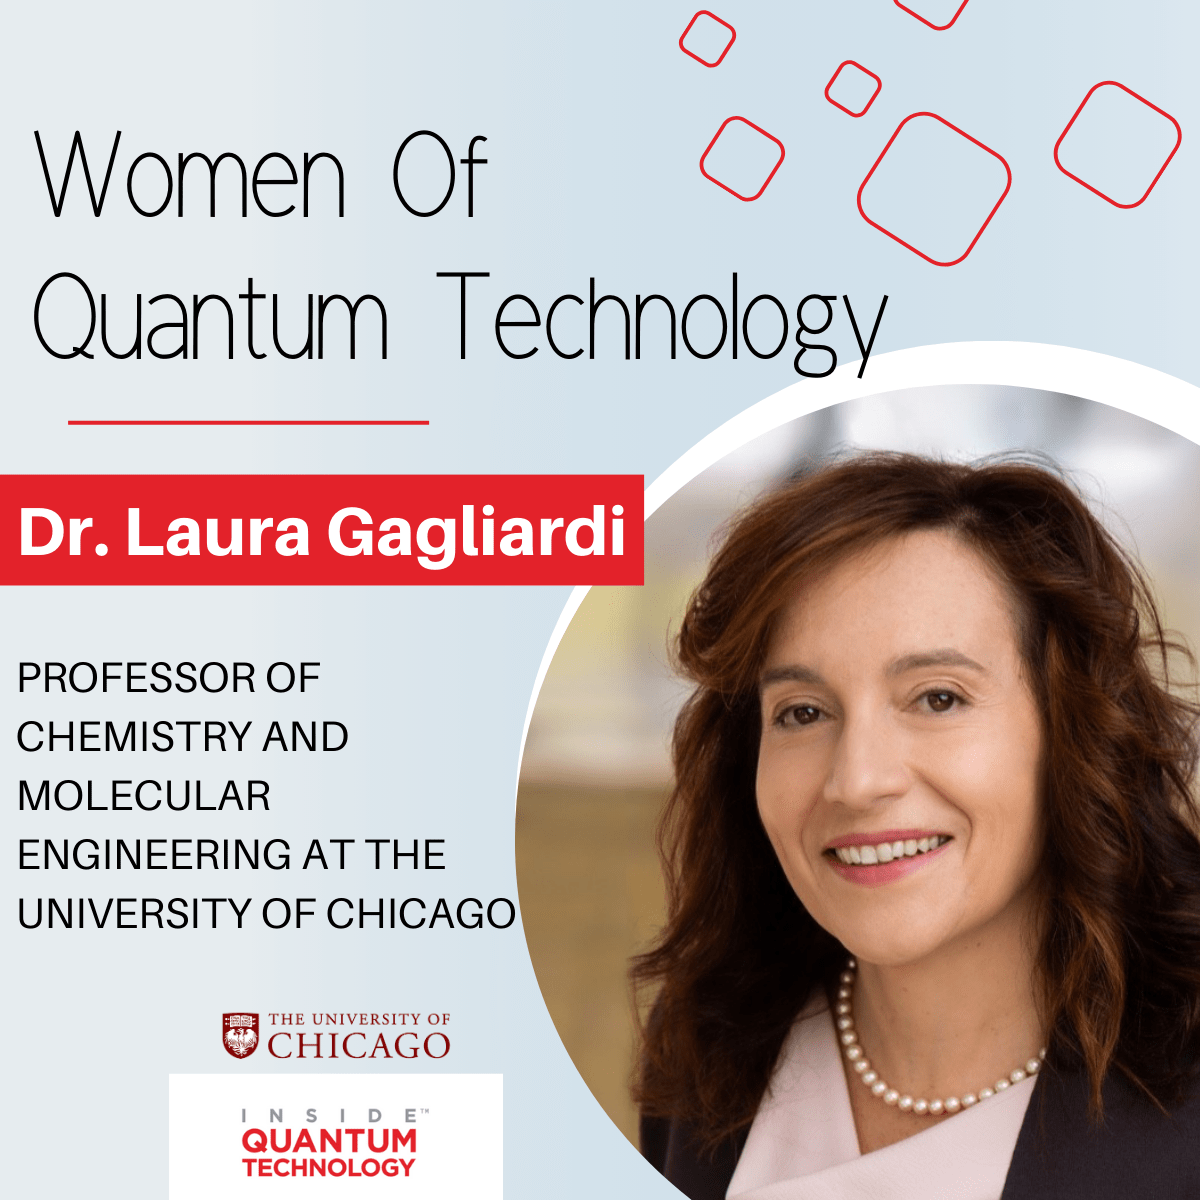 量子テクノロジーの女性たち: シカゴ大学の Laura Gagliardi 博士 - 量子テクノロジーの内部